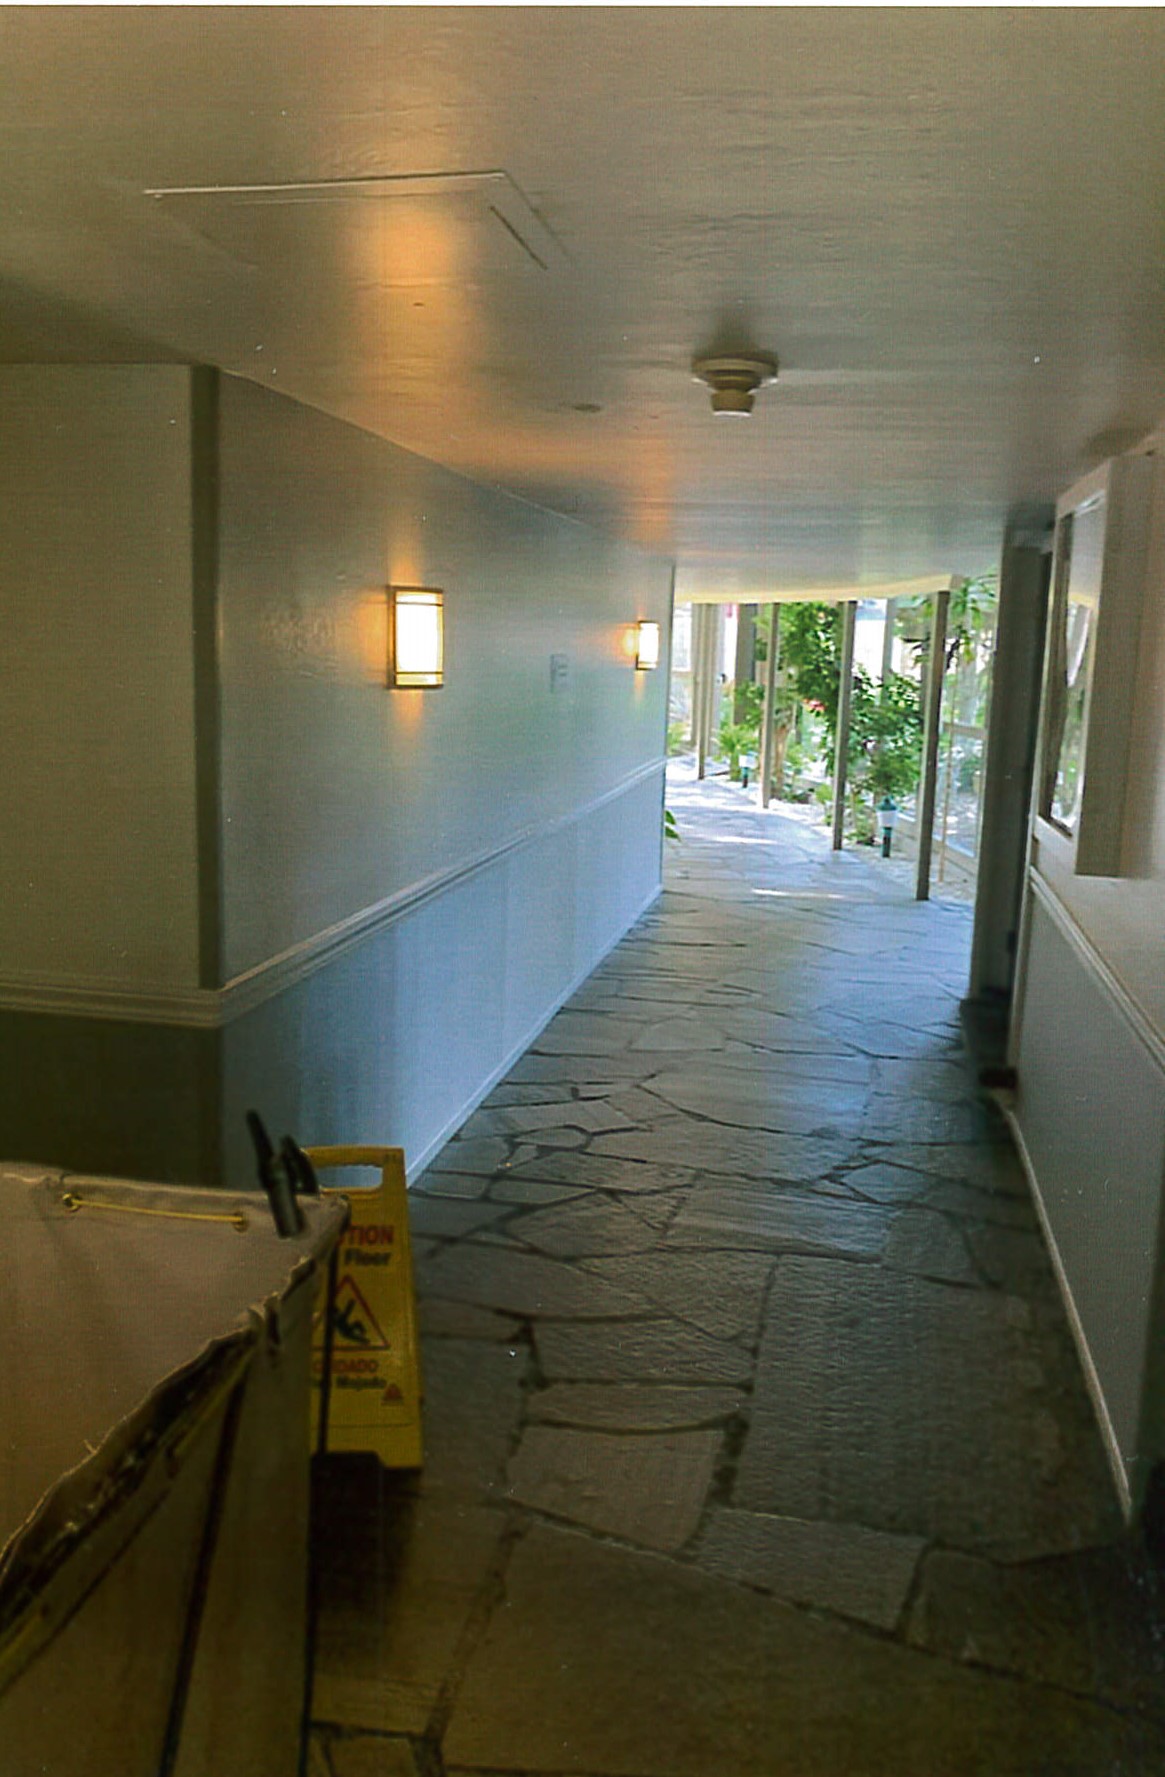 First floor corridor and flagstone walkway